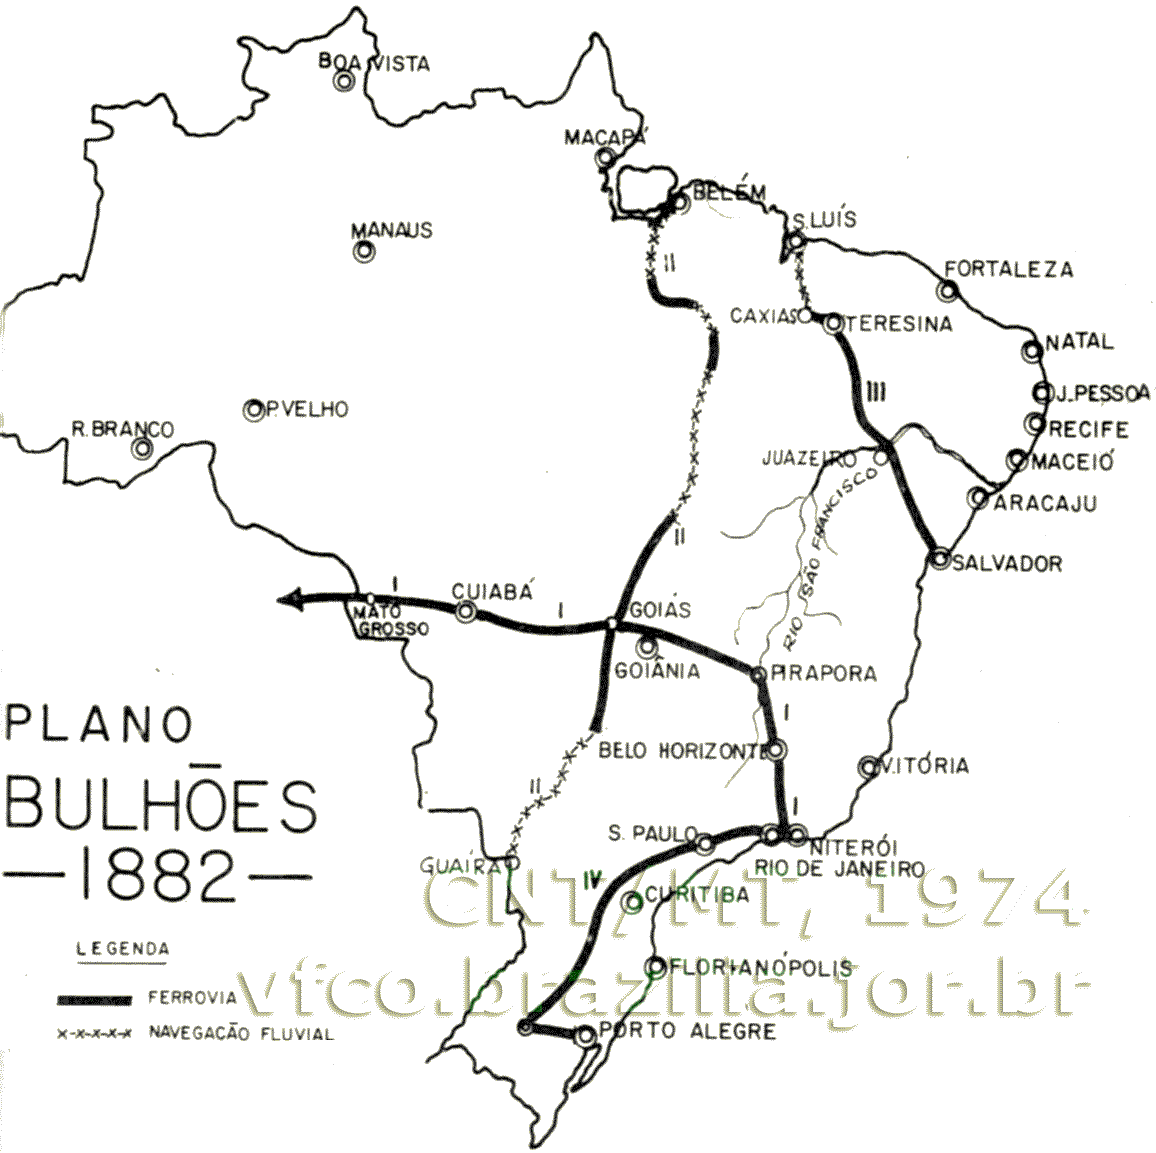 Traçados das ferrovias propostas pelo engenheiro Bulhões